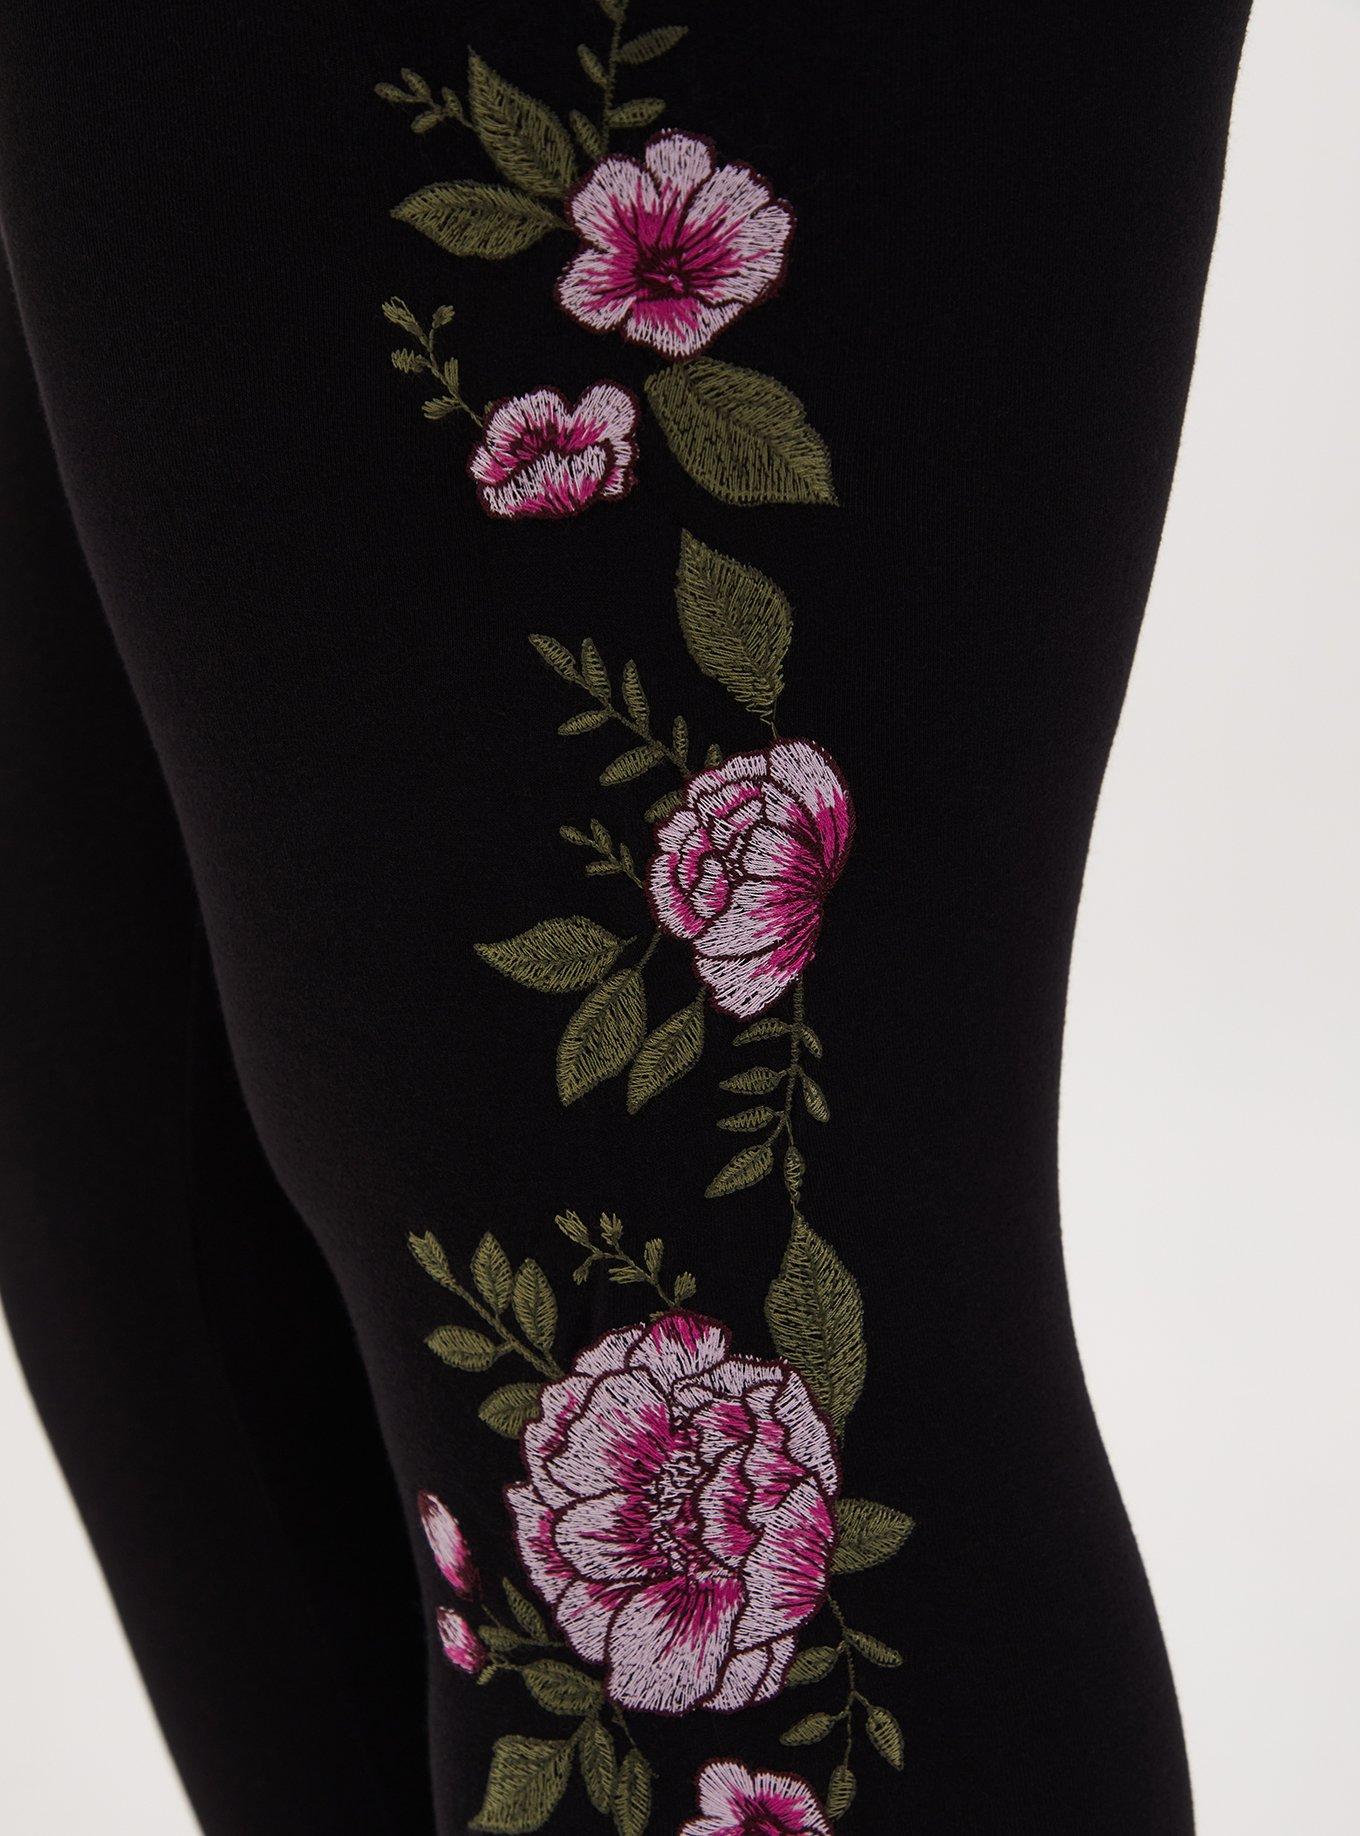 Plus Size - Premium Legging - Floral Black - Torrid